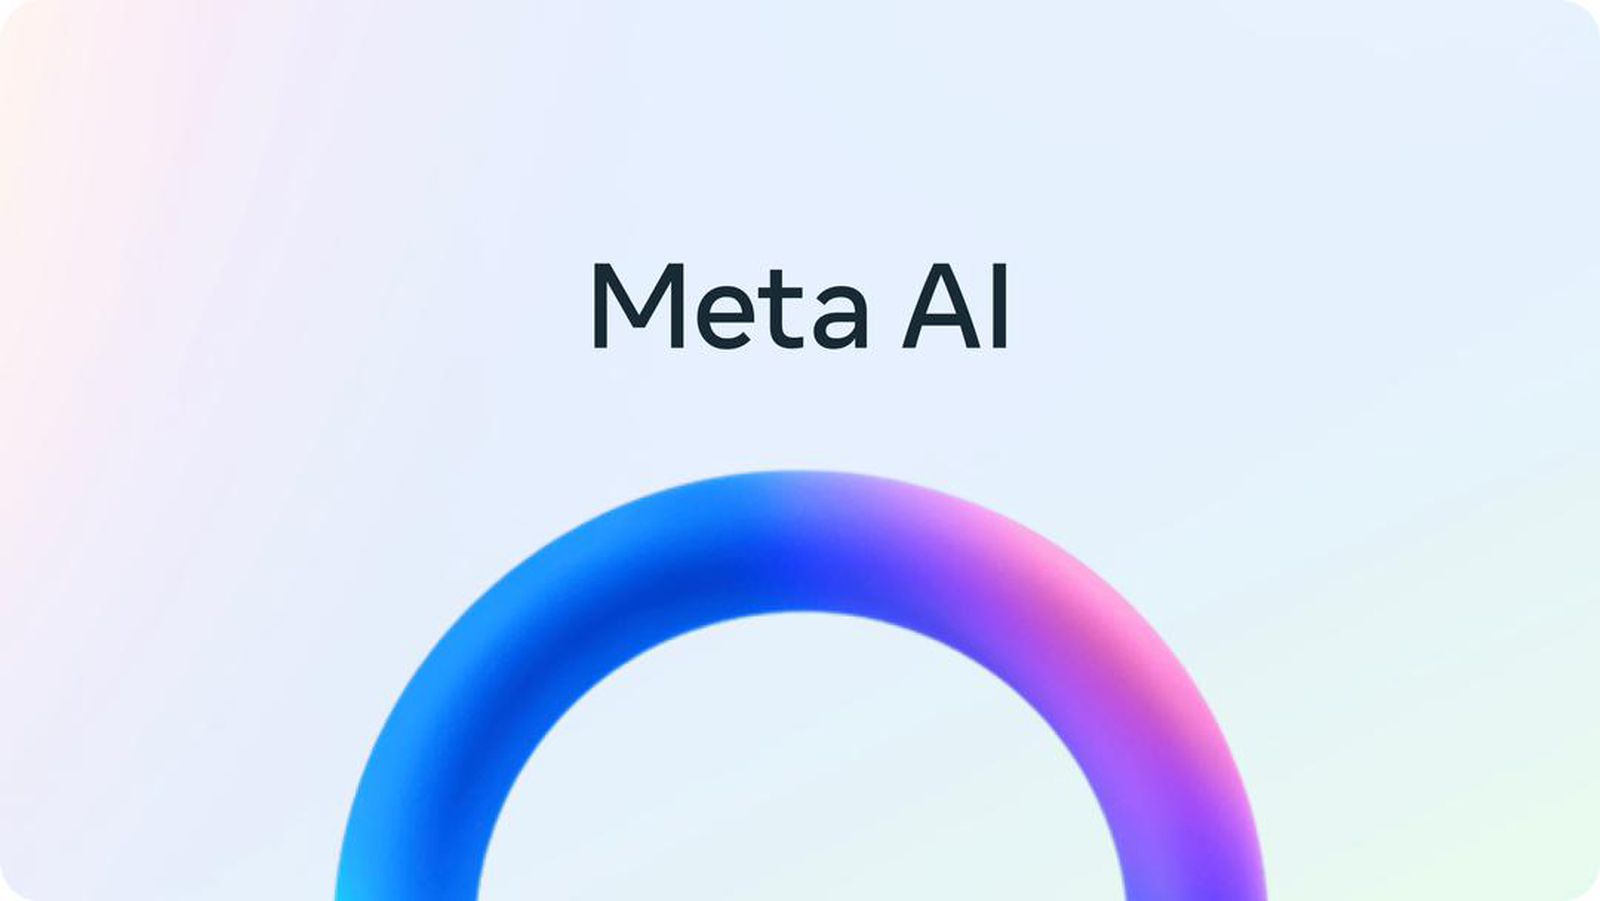 Apple no estaba interesado en una asociación de IA con Meta debido a preocupaciones de privacidad – Título SEO en Español: Por qué Apple rechazó asociarse con Meta en Inteligencia Artificial por motivos de privacidad